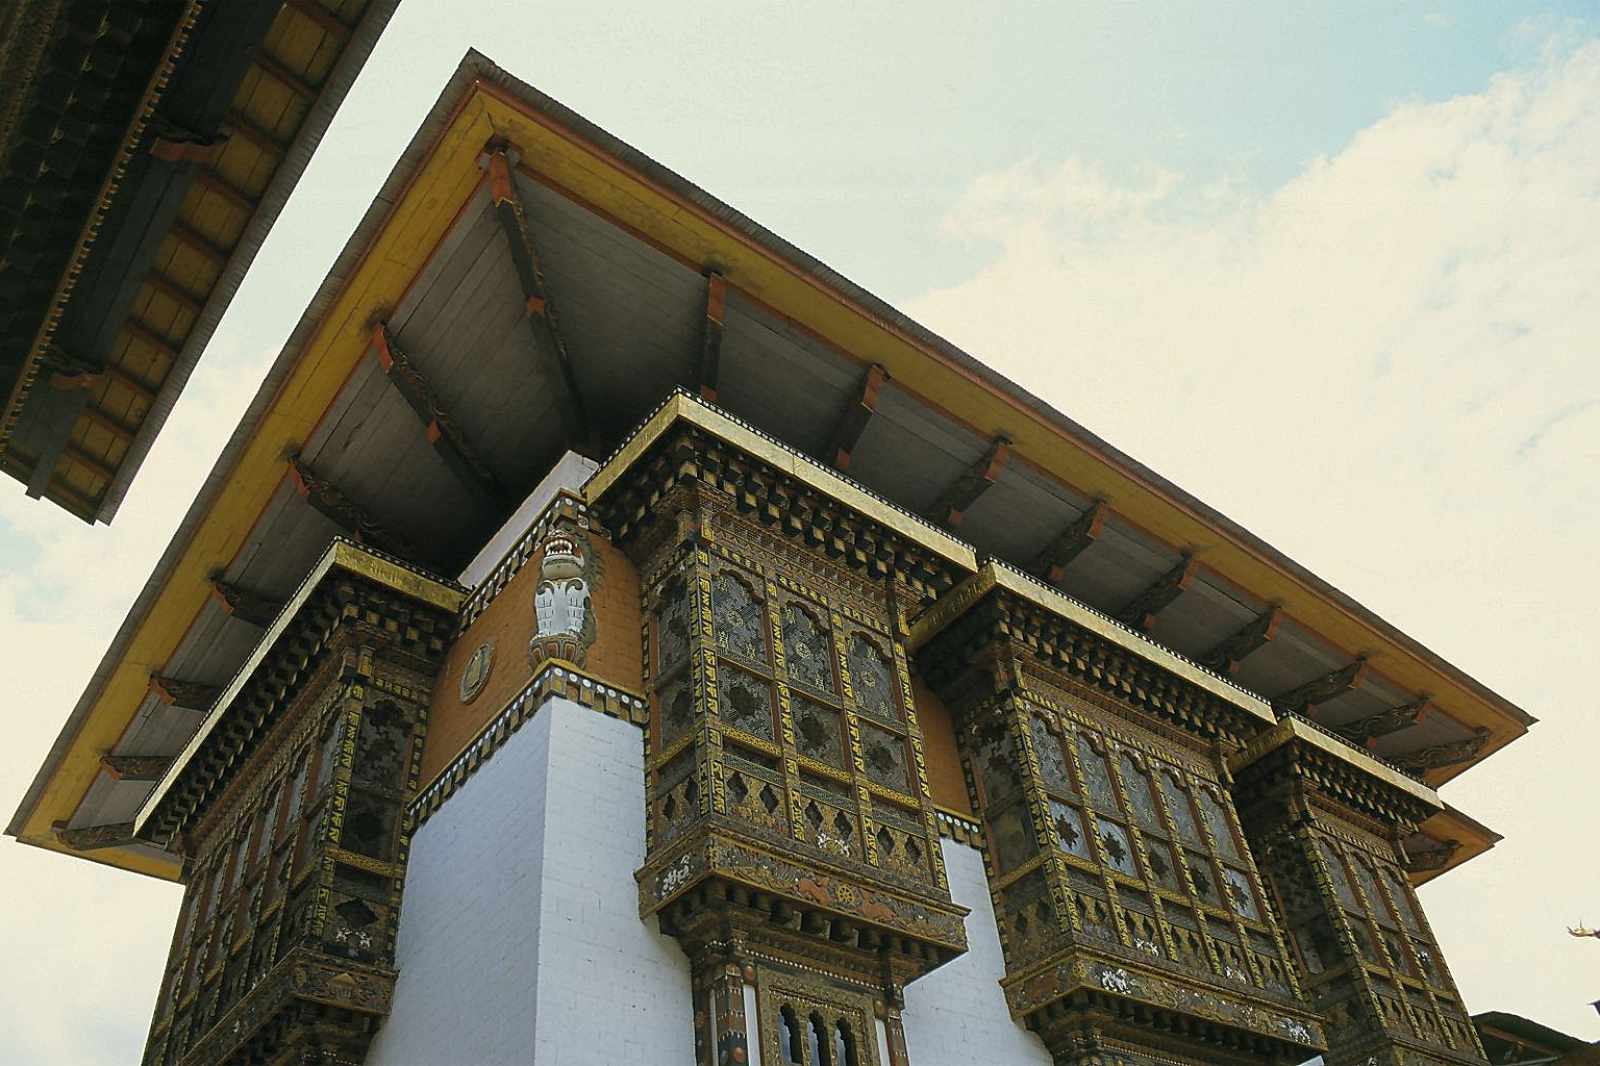 Bhutan, Punakha